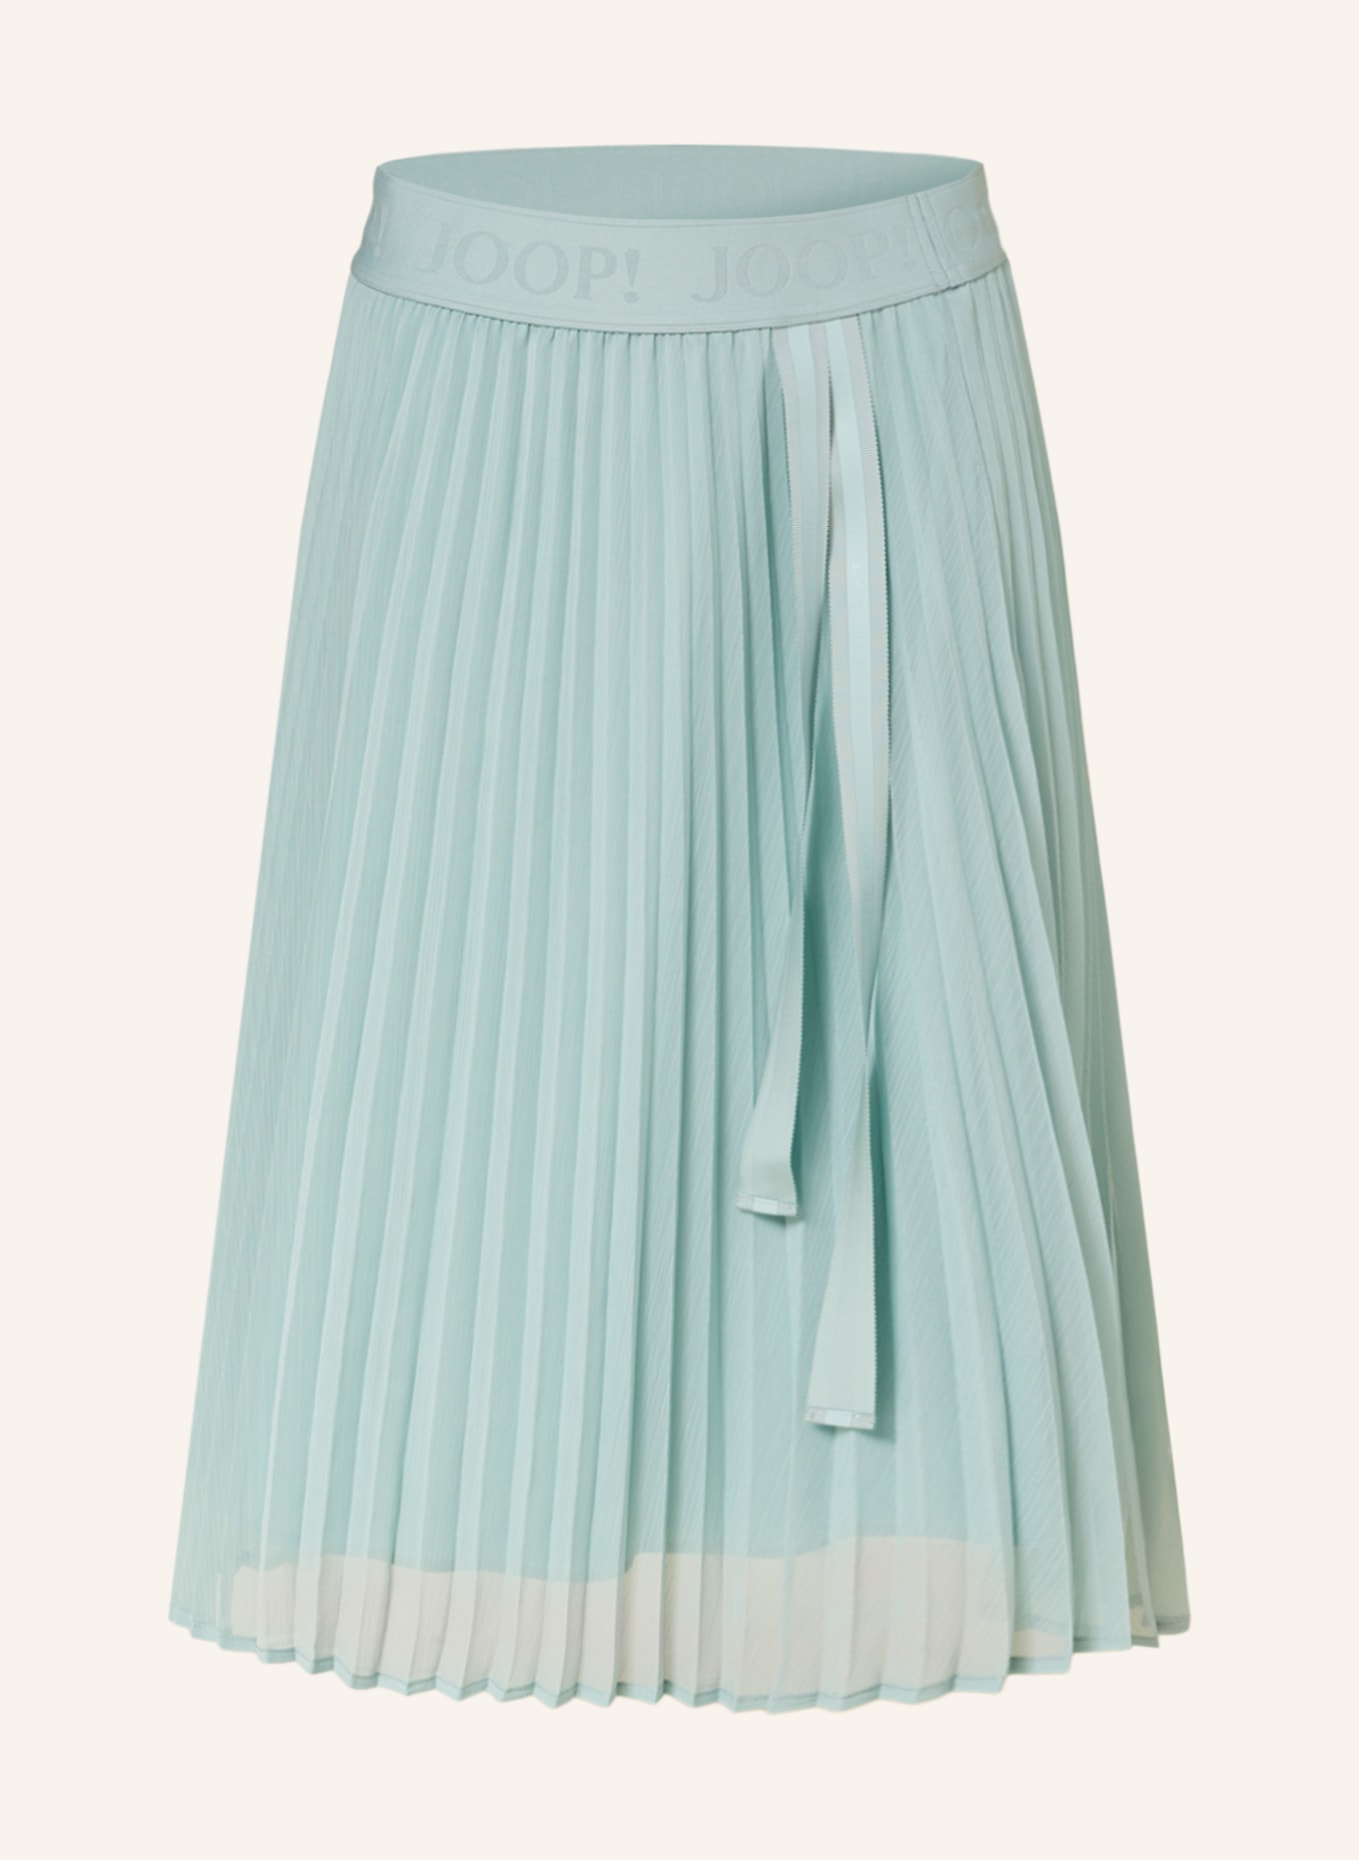 JOOP! Pleated skirt, Color: MINT (Image 1)